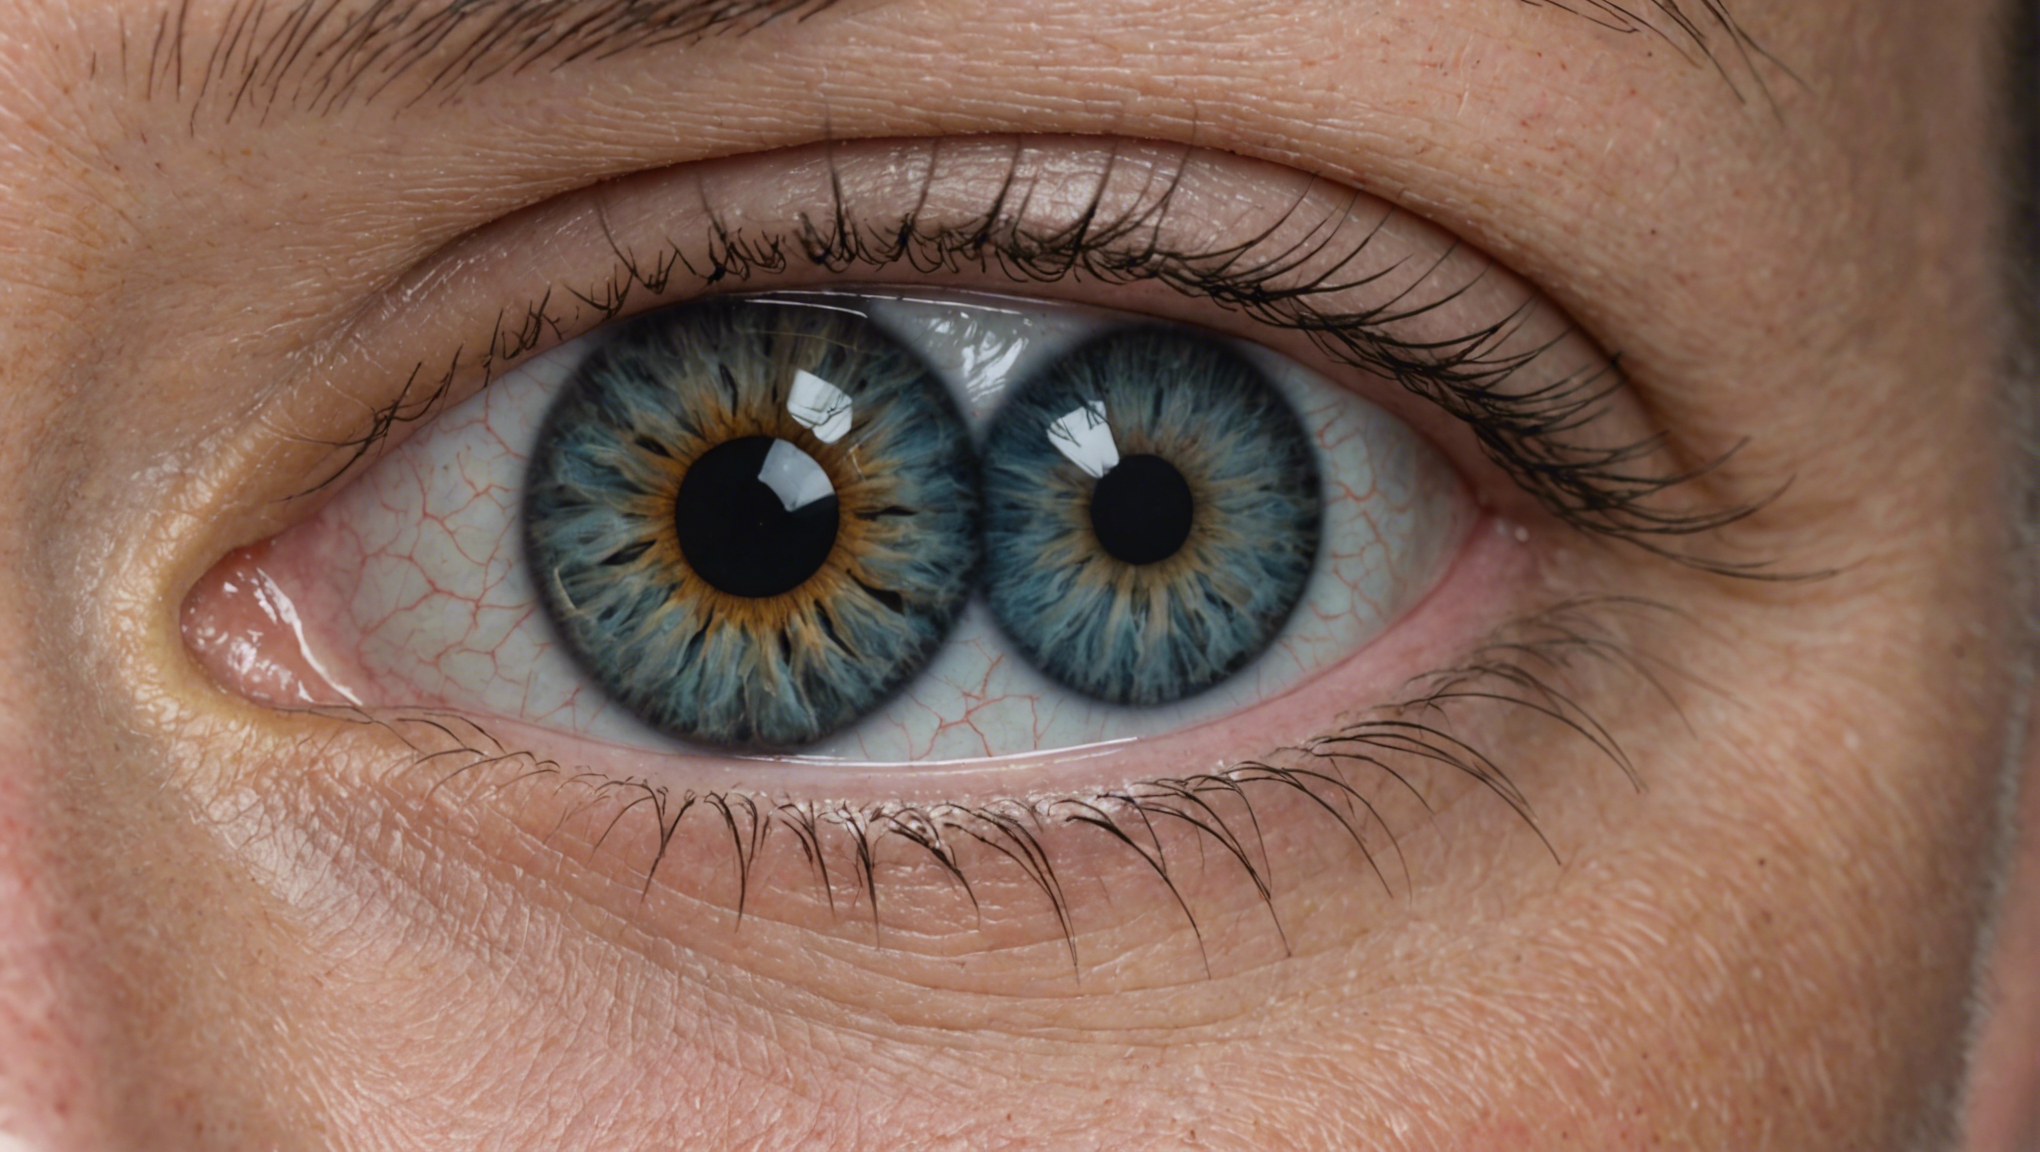 la chirurgie de la cataracte permet de restaurer la vision en remplaçant le cristallin opacifié par un cristallin artificiel, améliorant ainsi la qualité de vie des patients atteints de cataracte.